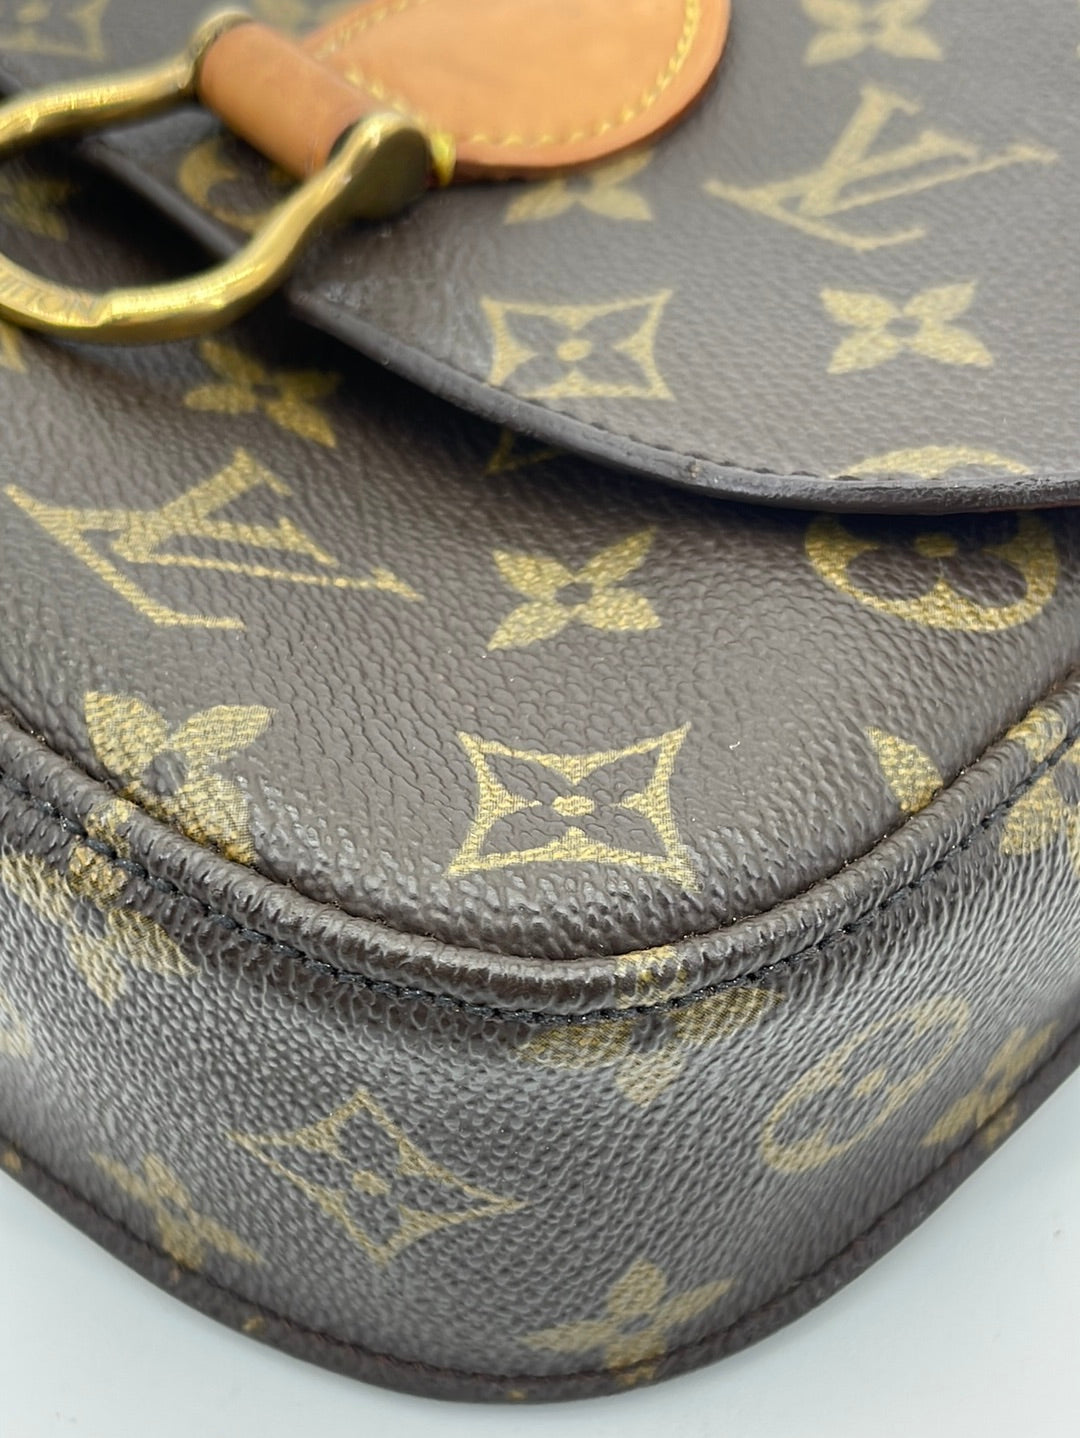 Shop authentic Louis Vuitton Pégase 55 at revogue for just USD